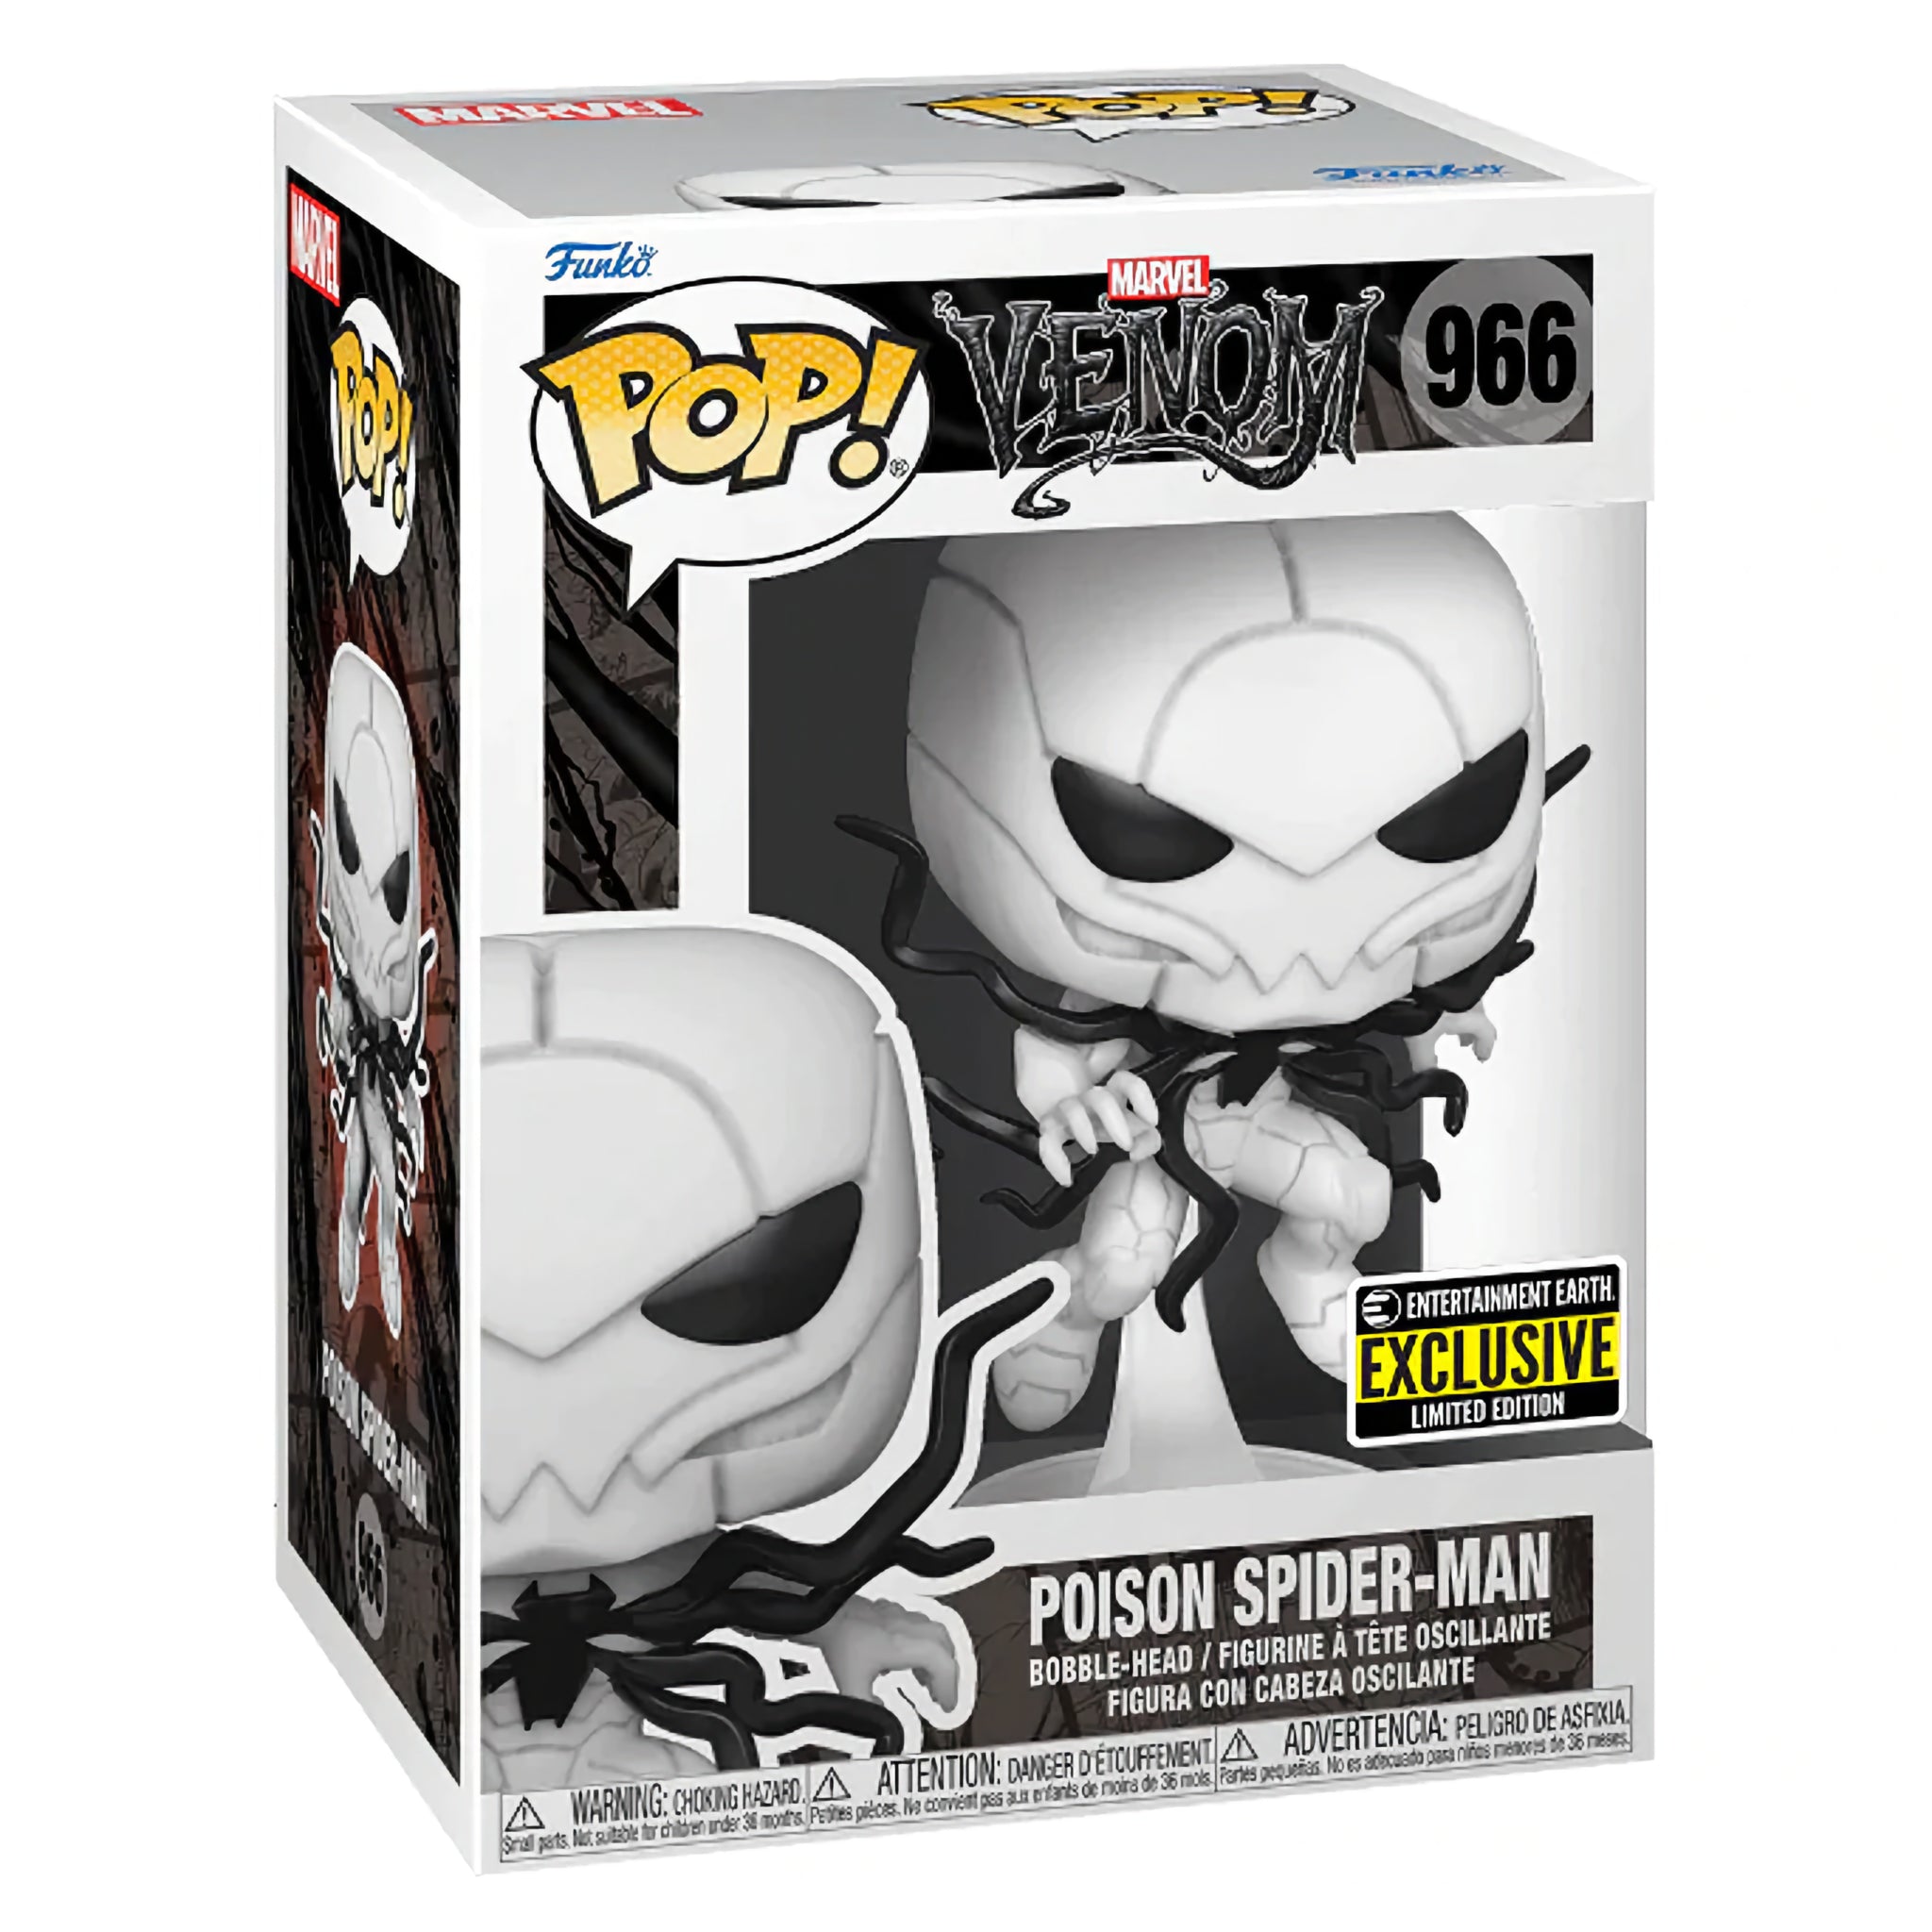 Poison Spider-Man Funko Pop! EE EXCLUSIVE